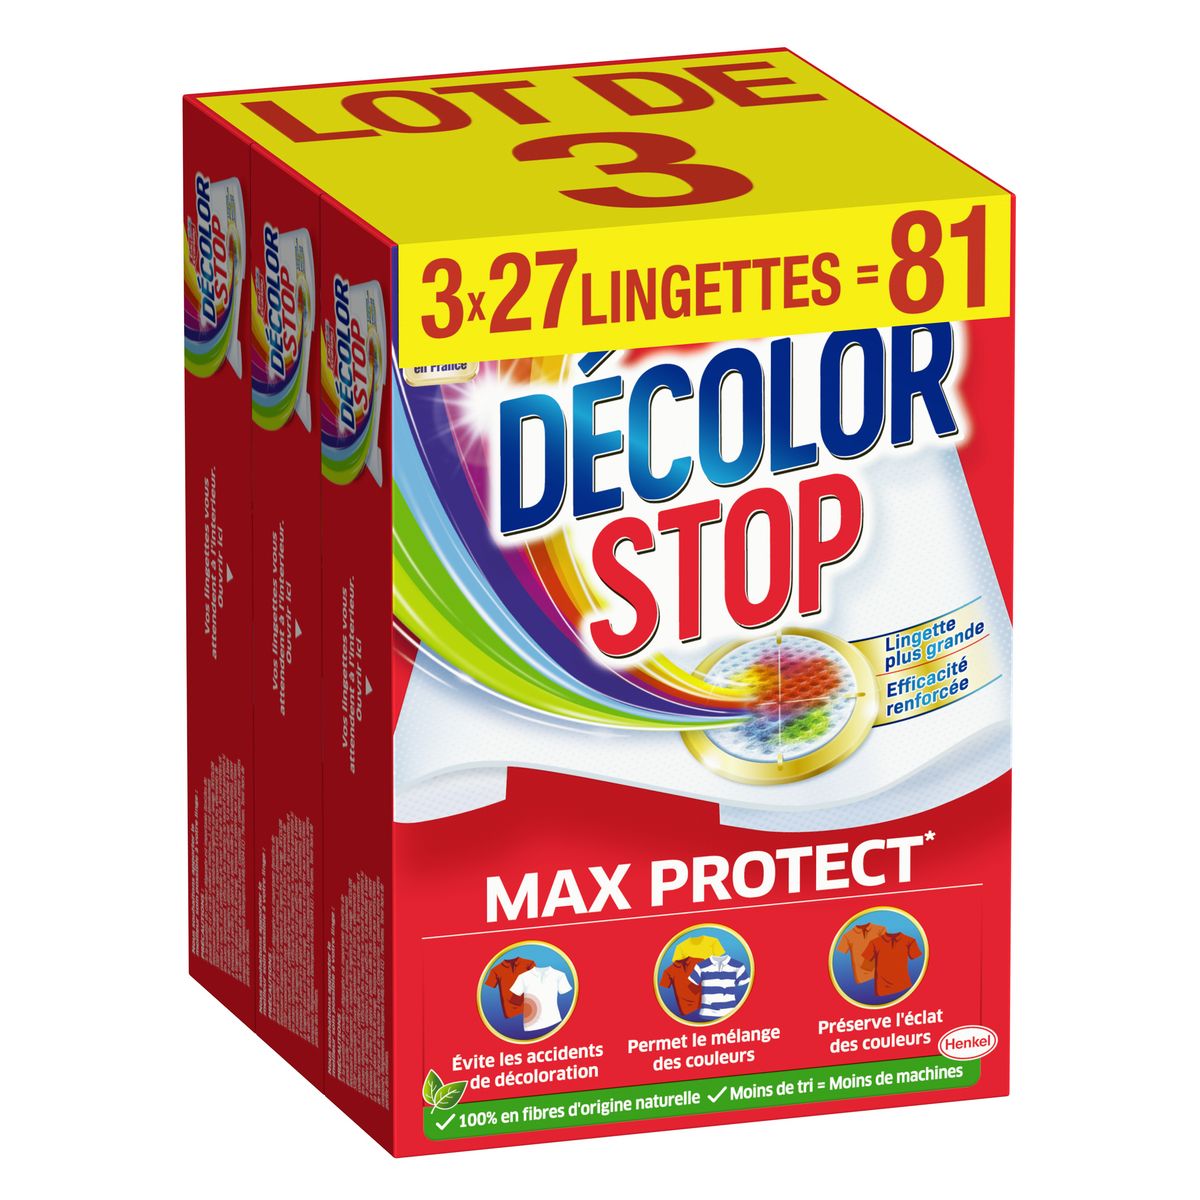 DECOLOR STOP Lingette anti-décoloration max protect 3x27 lingettes